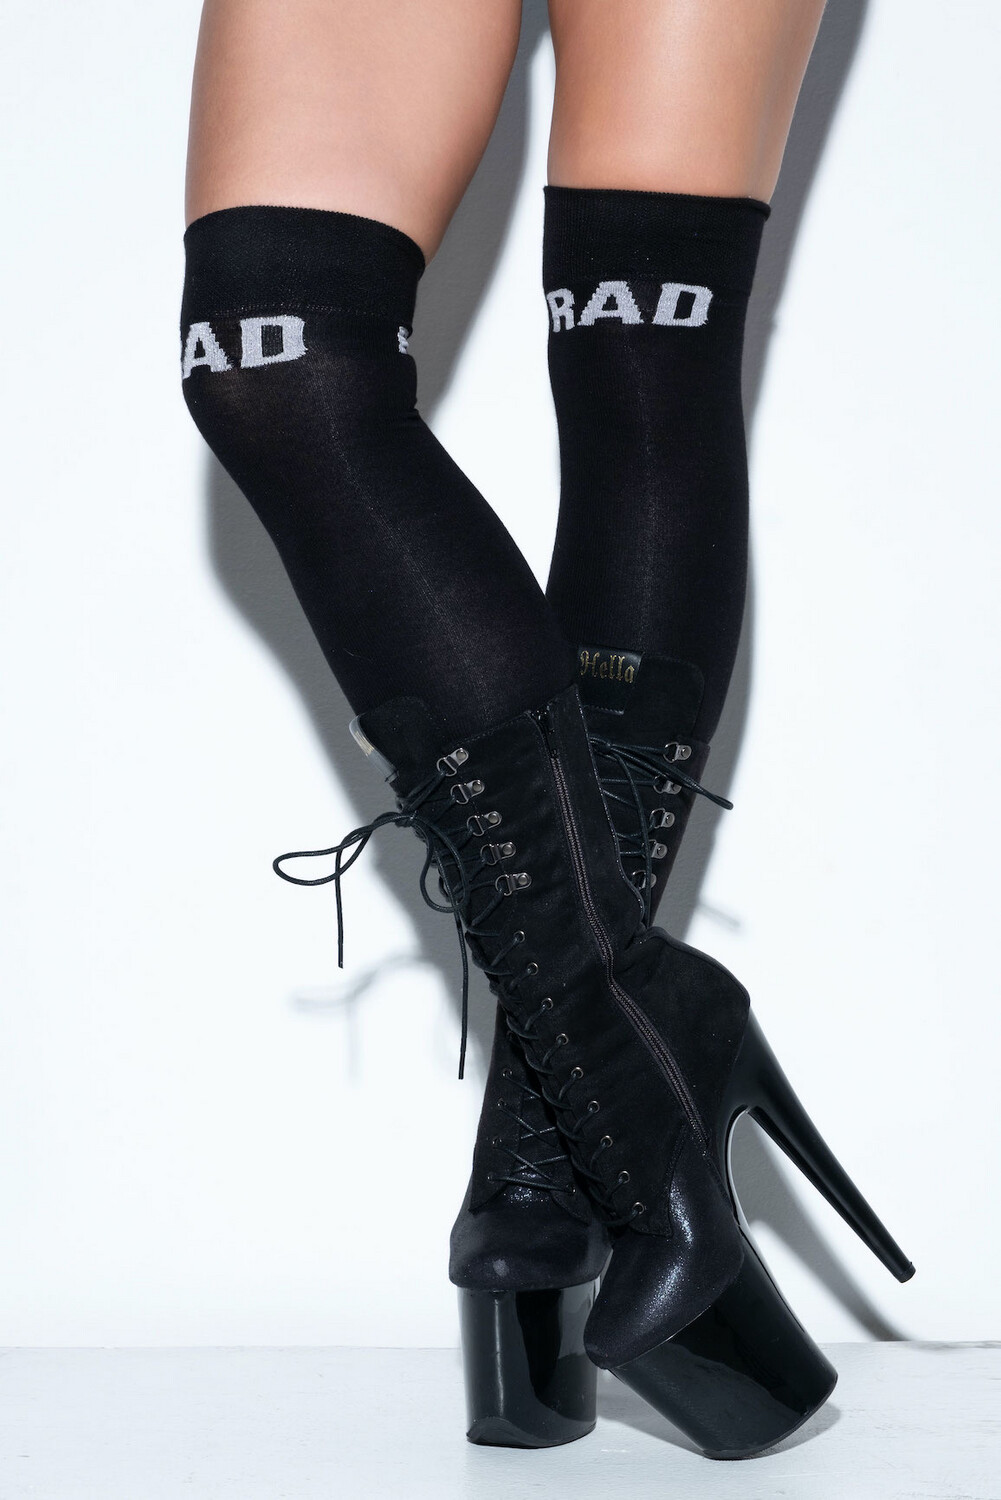 Rad over the knee socks - Black